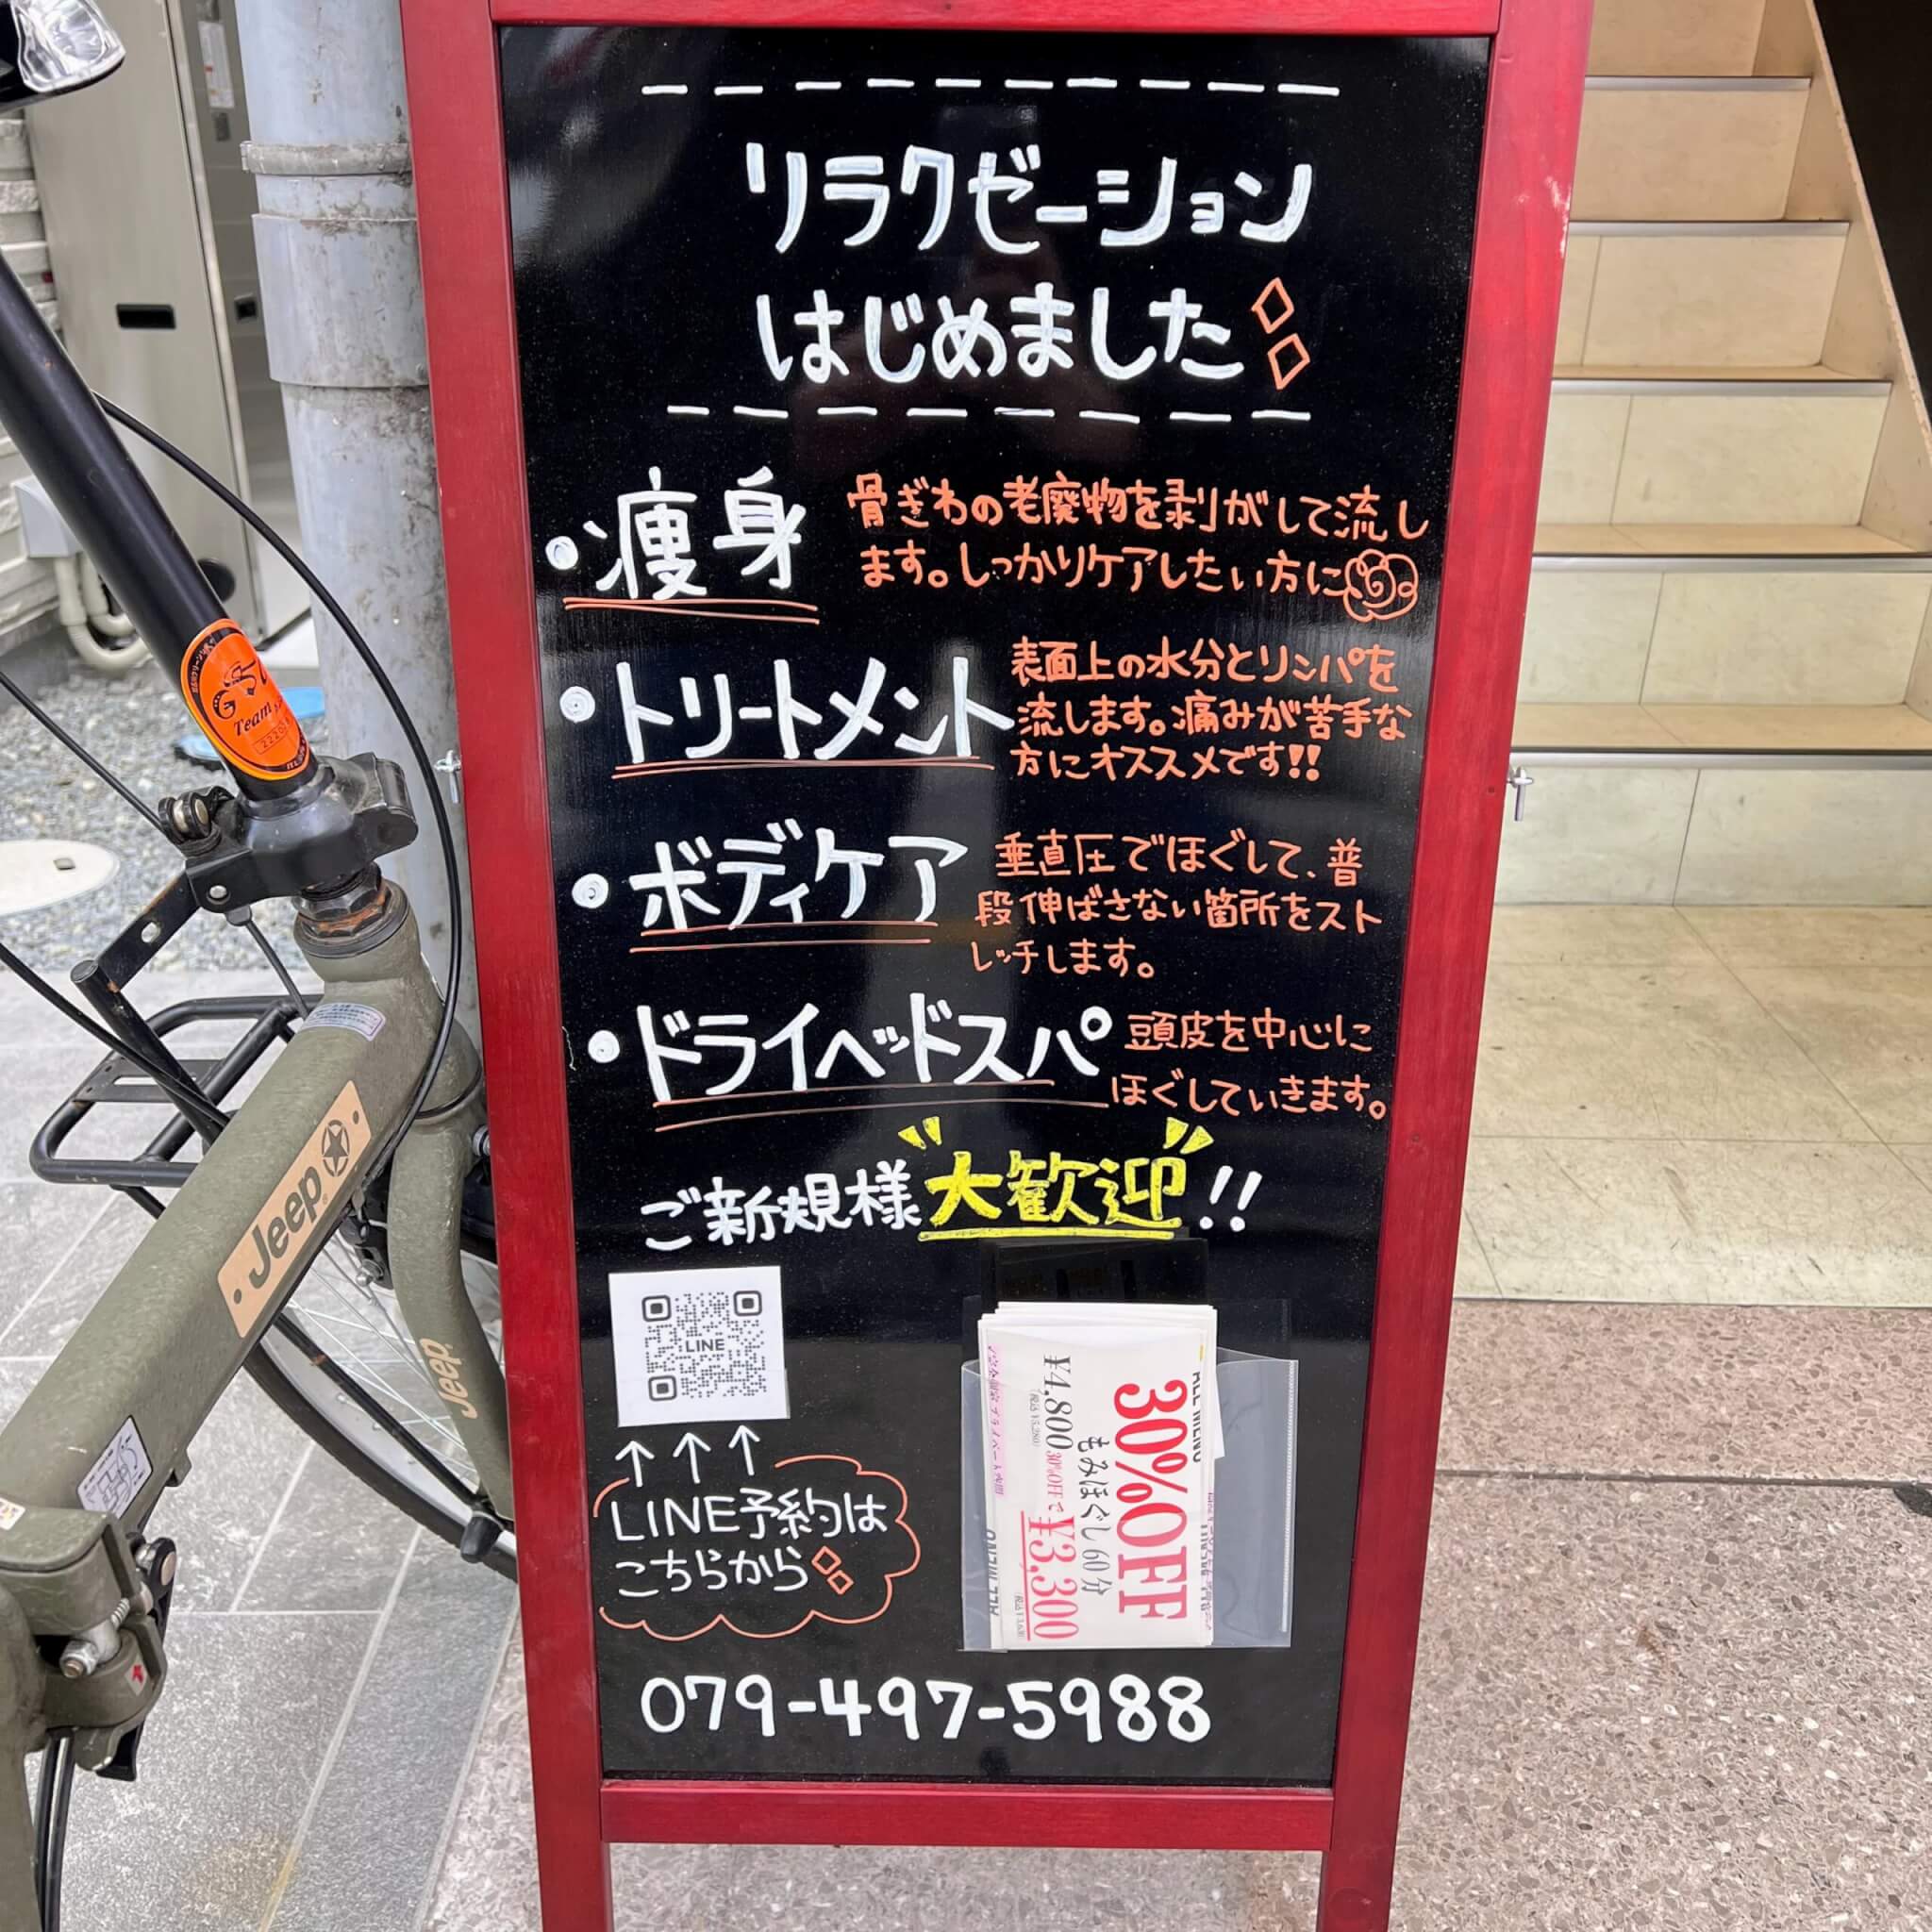 SOLIS加古川店のリラクゼーションメニュー。痩身・トリートメント・ボディケア・ドライヘッドスパのメニュー紹介